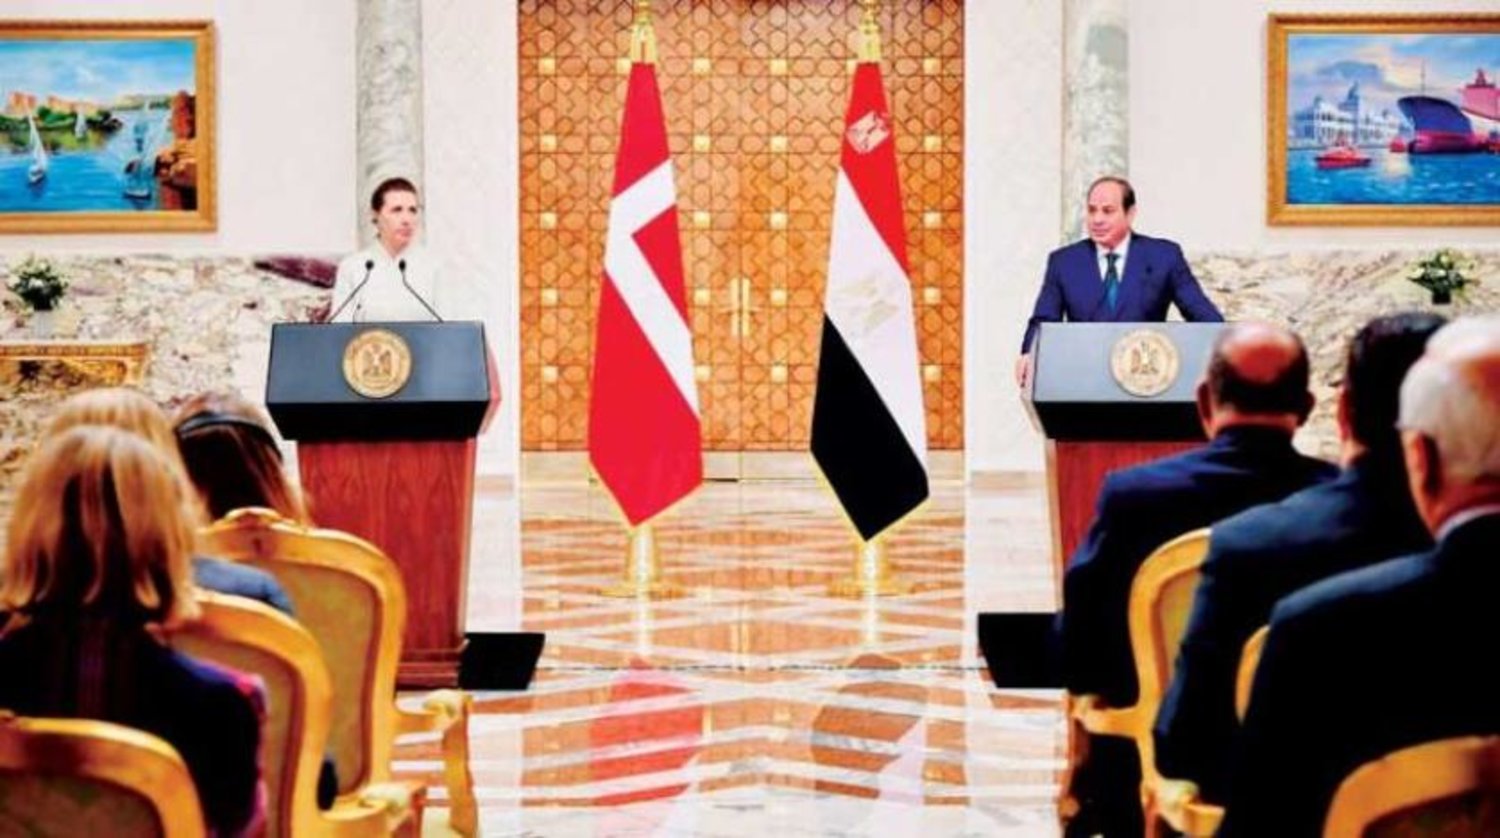 Mısır Cumhurbaşkanı Abdulfettah Sisi, Danimarka Başbakanı Mette Frederiksen’i Kahire’de kabul etti (Mısır Cumhurbaşkanlığı)